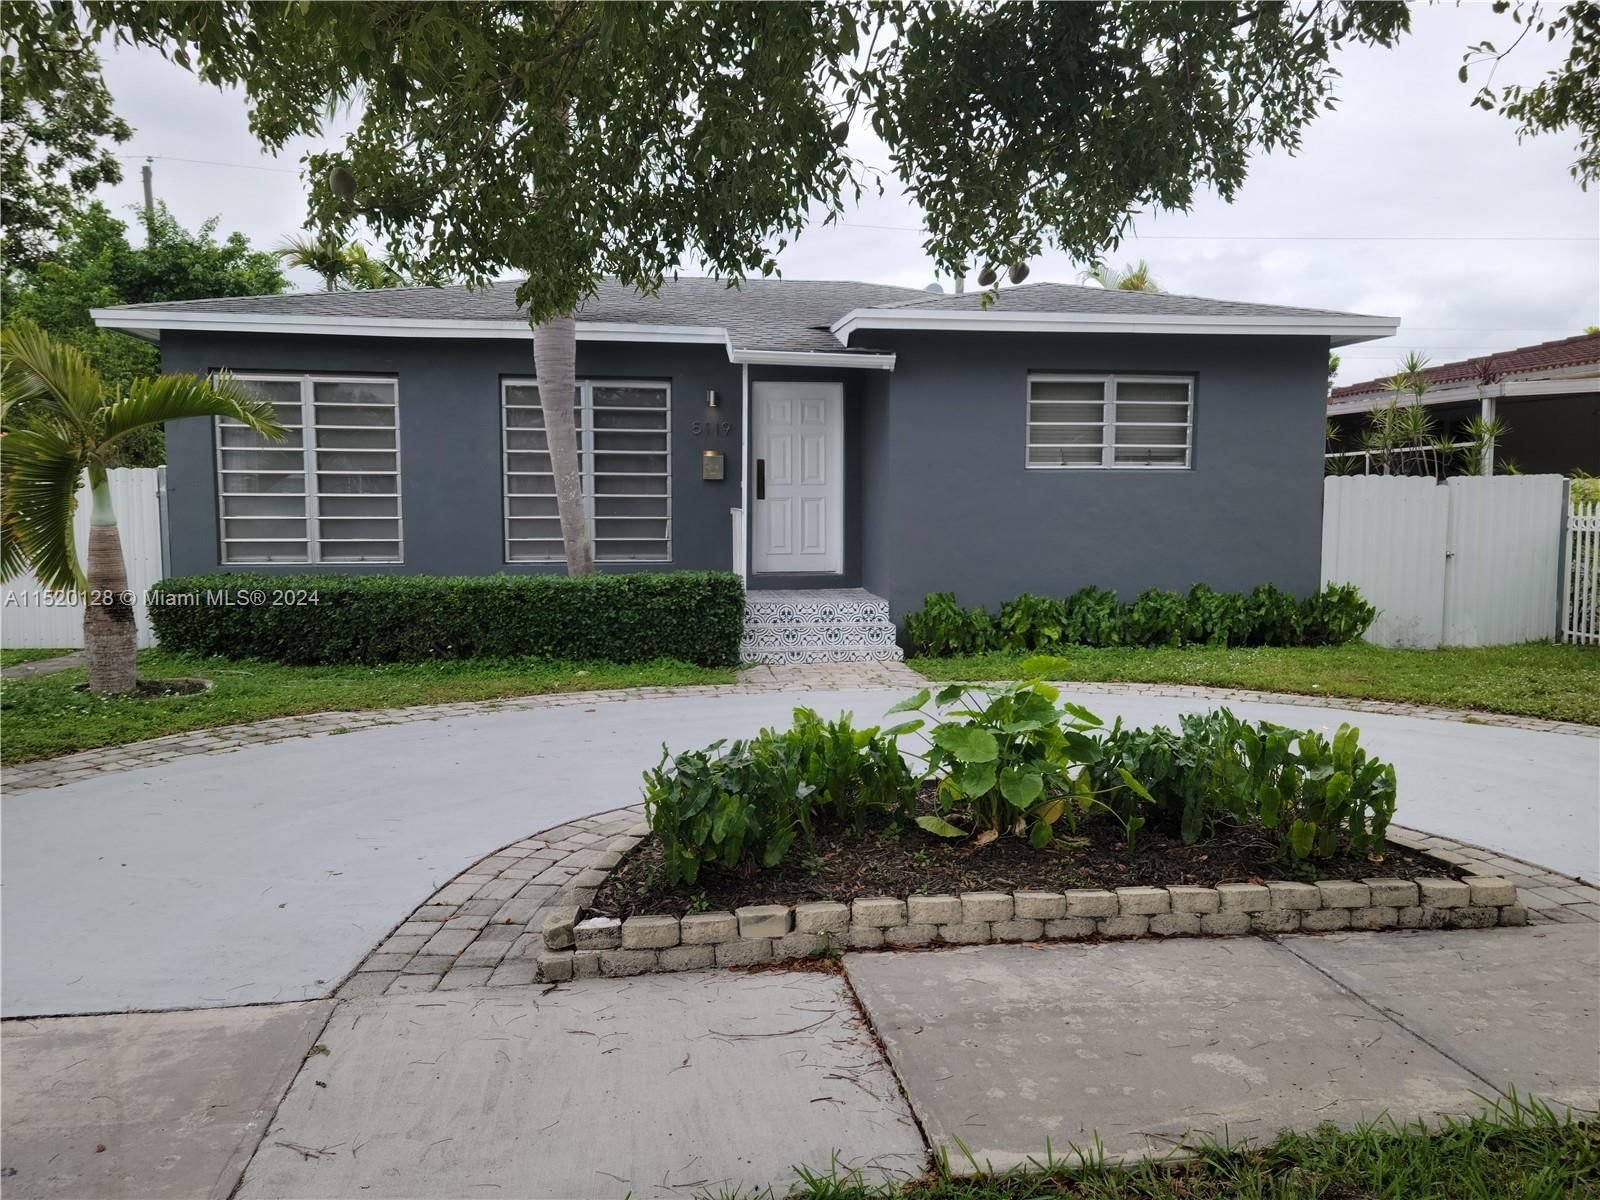 Real estate property located at 5119 6th St, Miami-Dade County, TRAIL GRANADA ADDN REV, Miami, FL